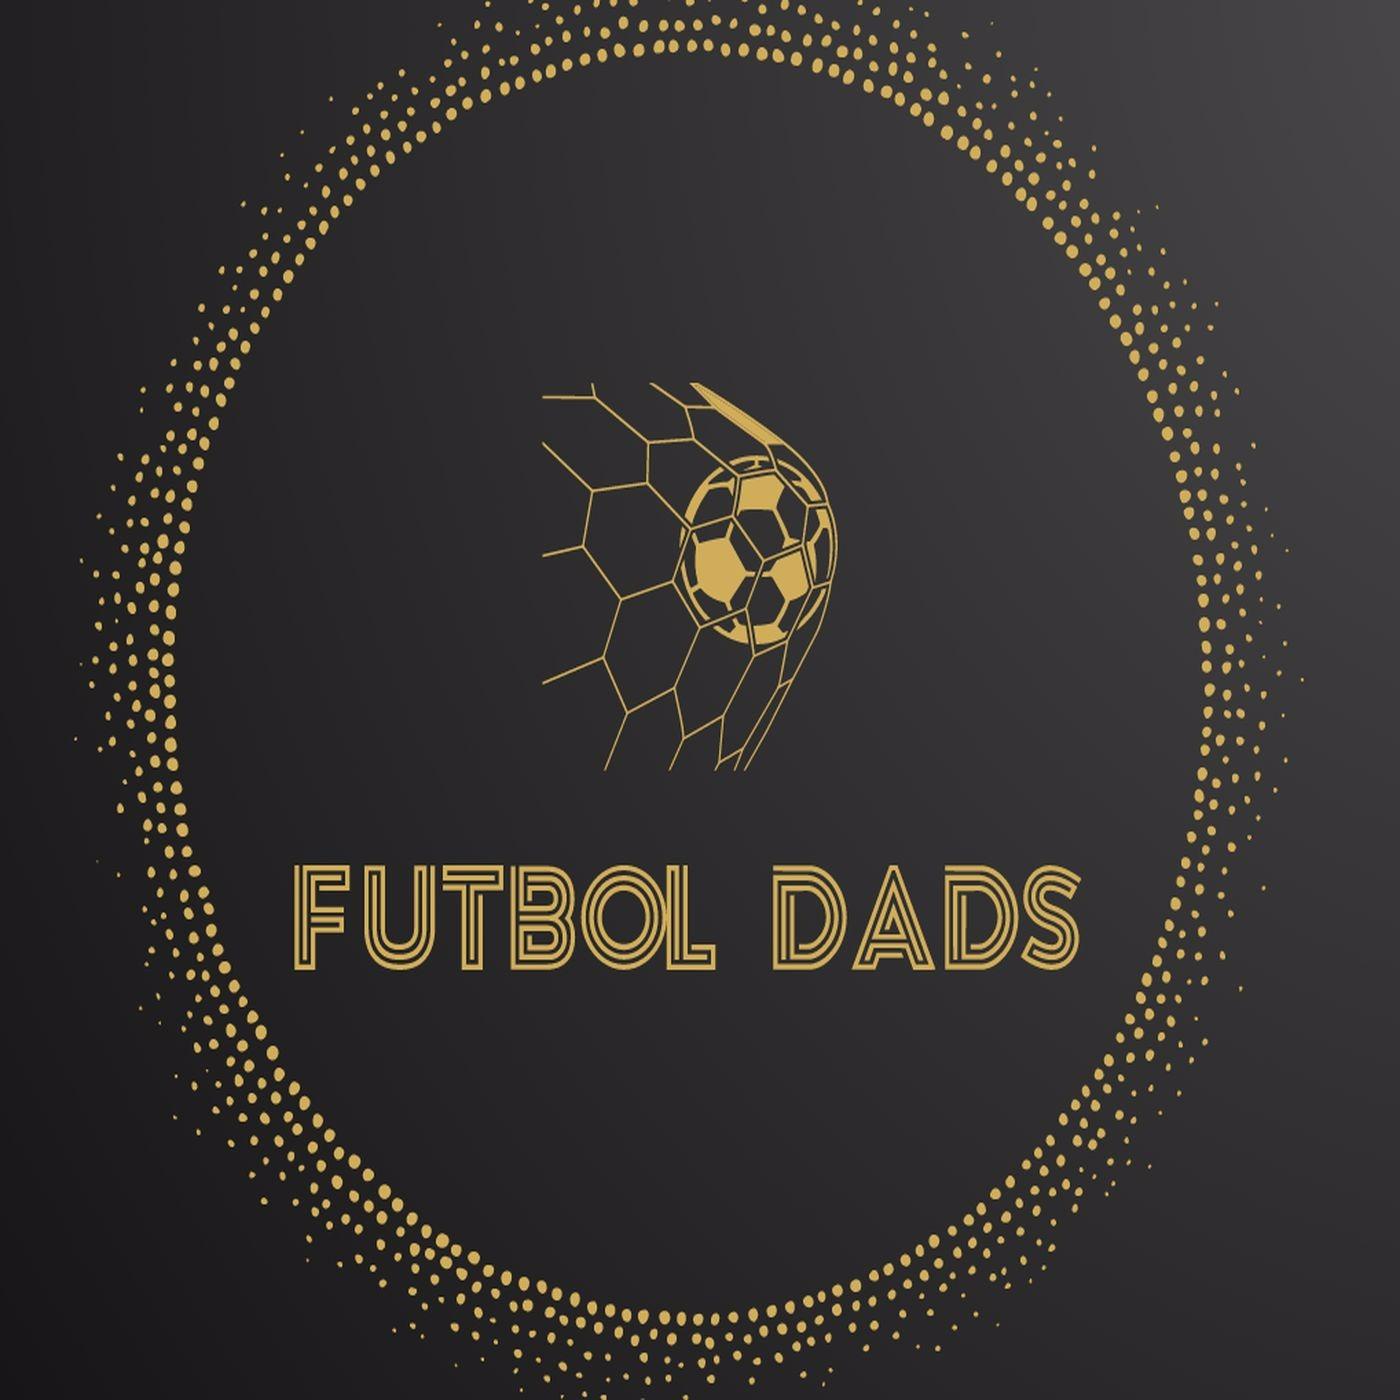 Futbol Dads